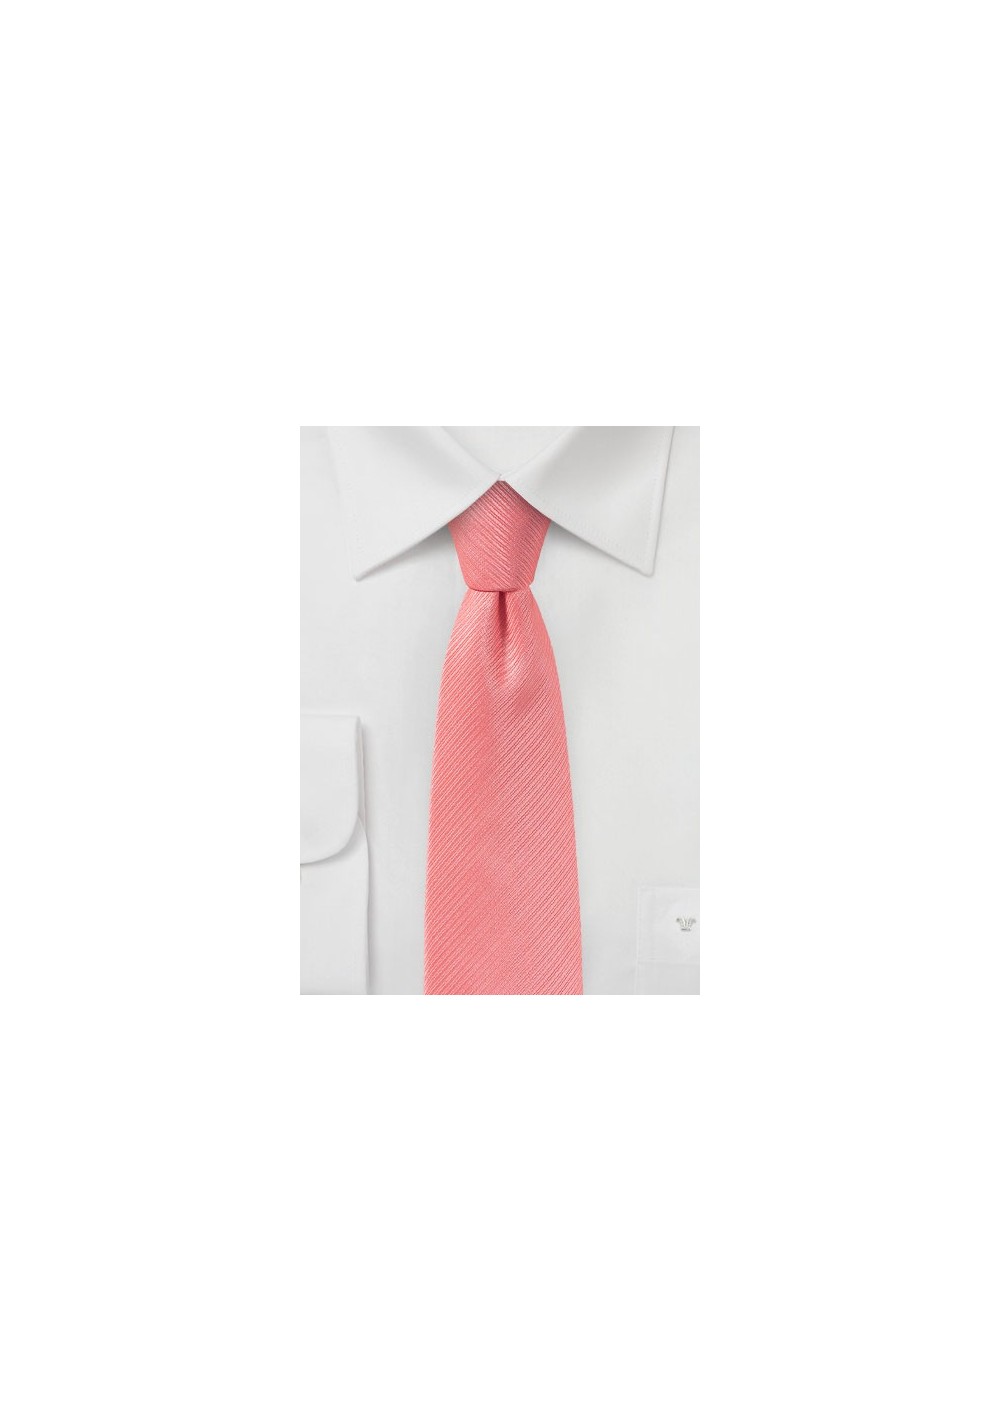 Coral Pink Skinny Tie